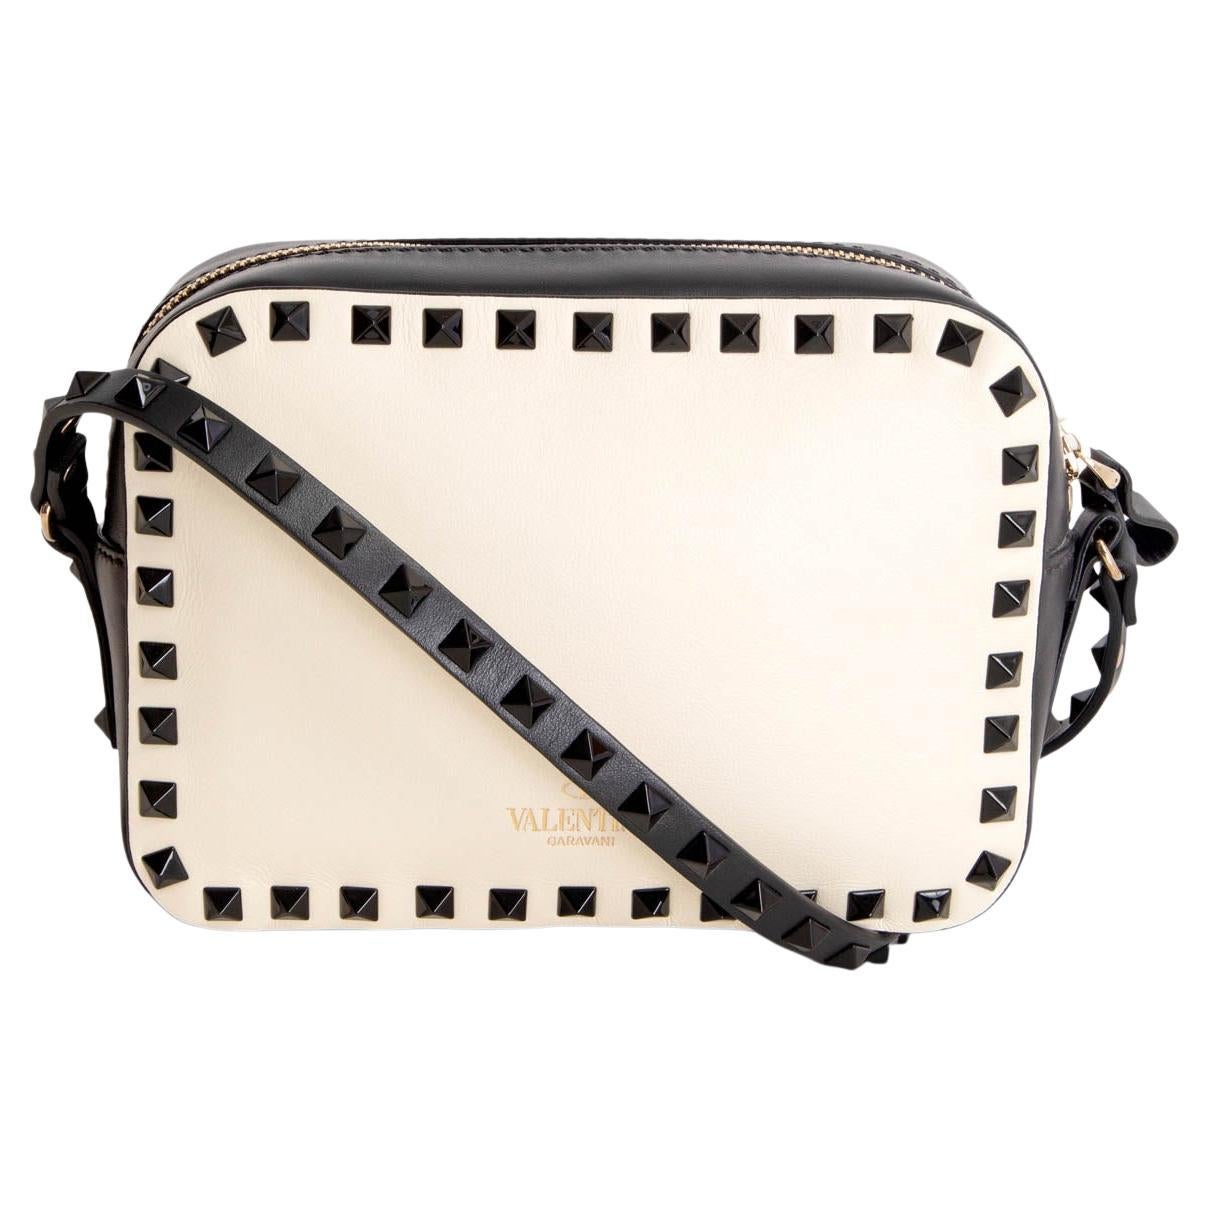 VALENTINO cream black leather 2015 ROCKSTUD CAMERA Shoulder Bag